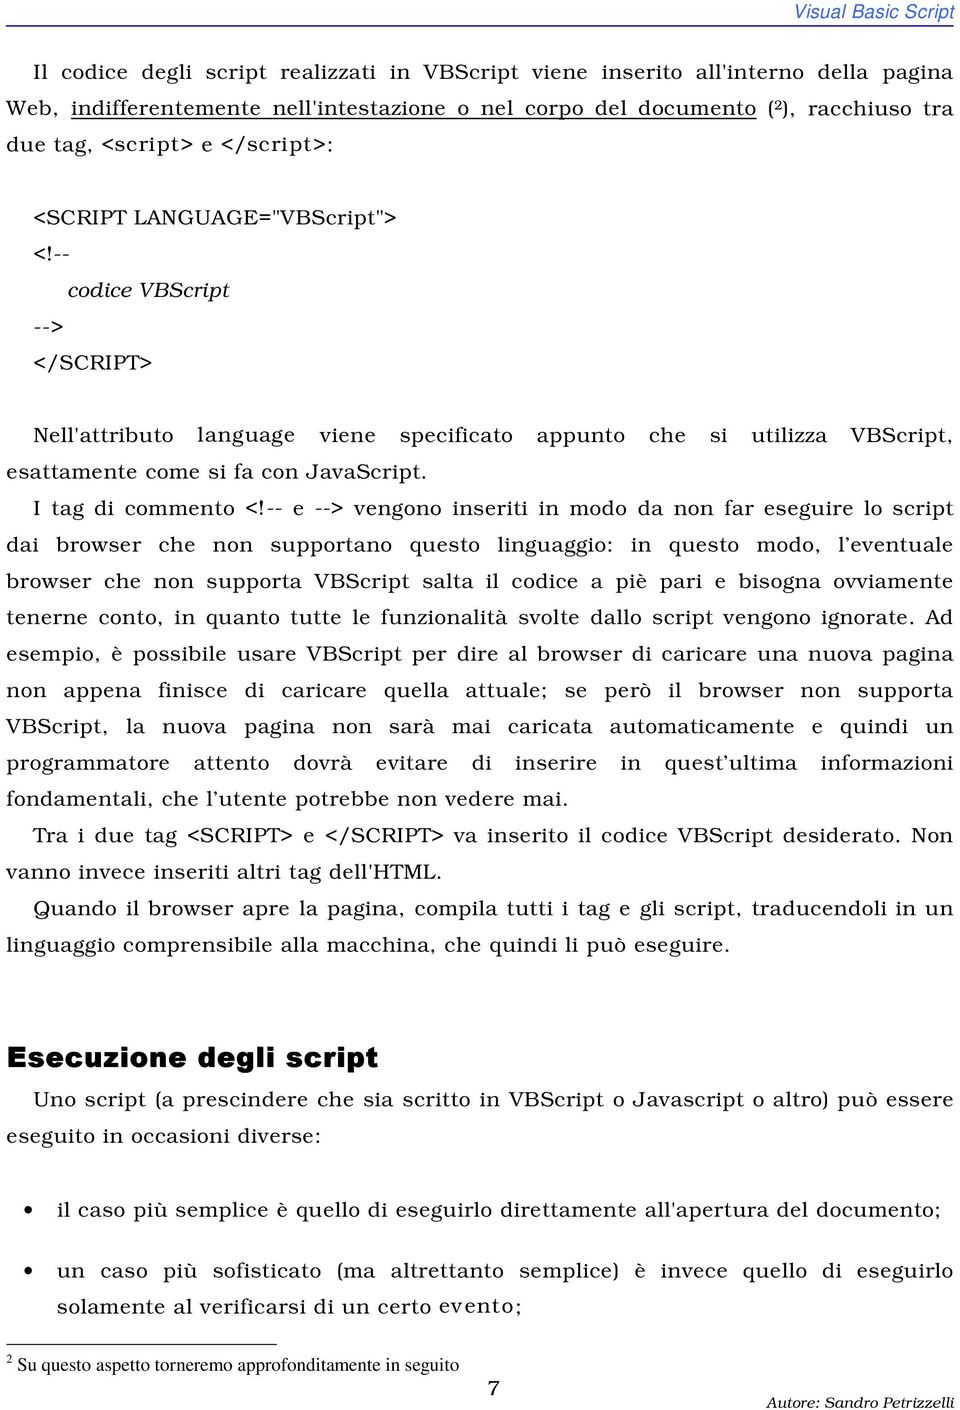 -- codice VBScript --> </SCRIPT> Nell'attributo language viene specificato appunto che si utilizza VBScript, esattamente come si fa con JavaScript. I tag di commento <!